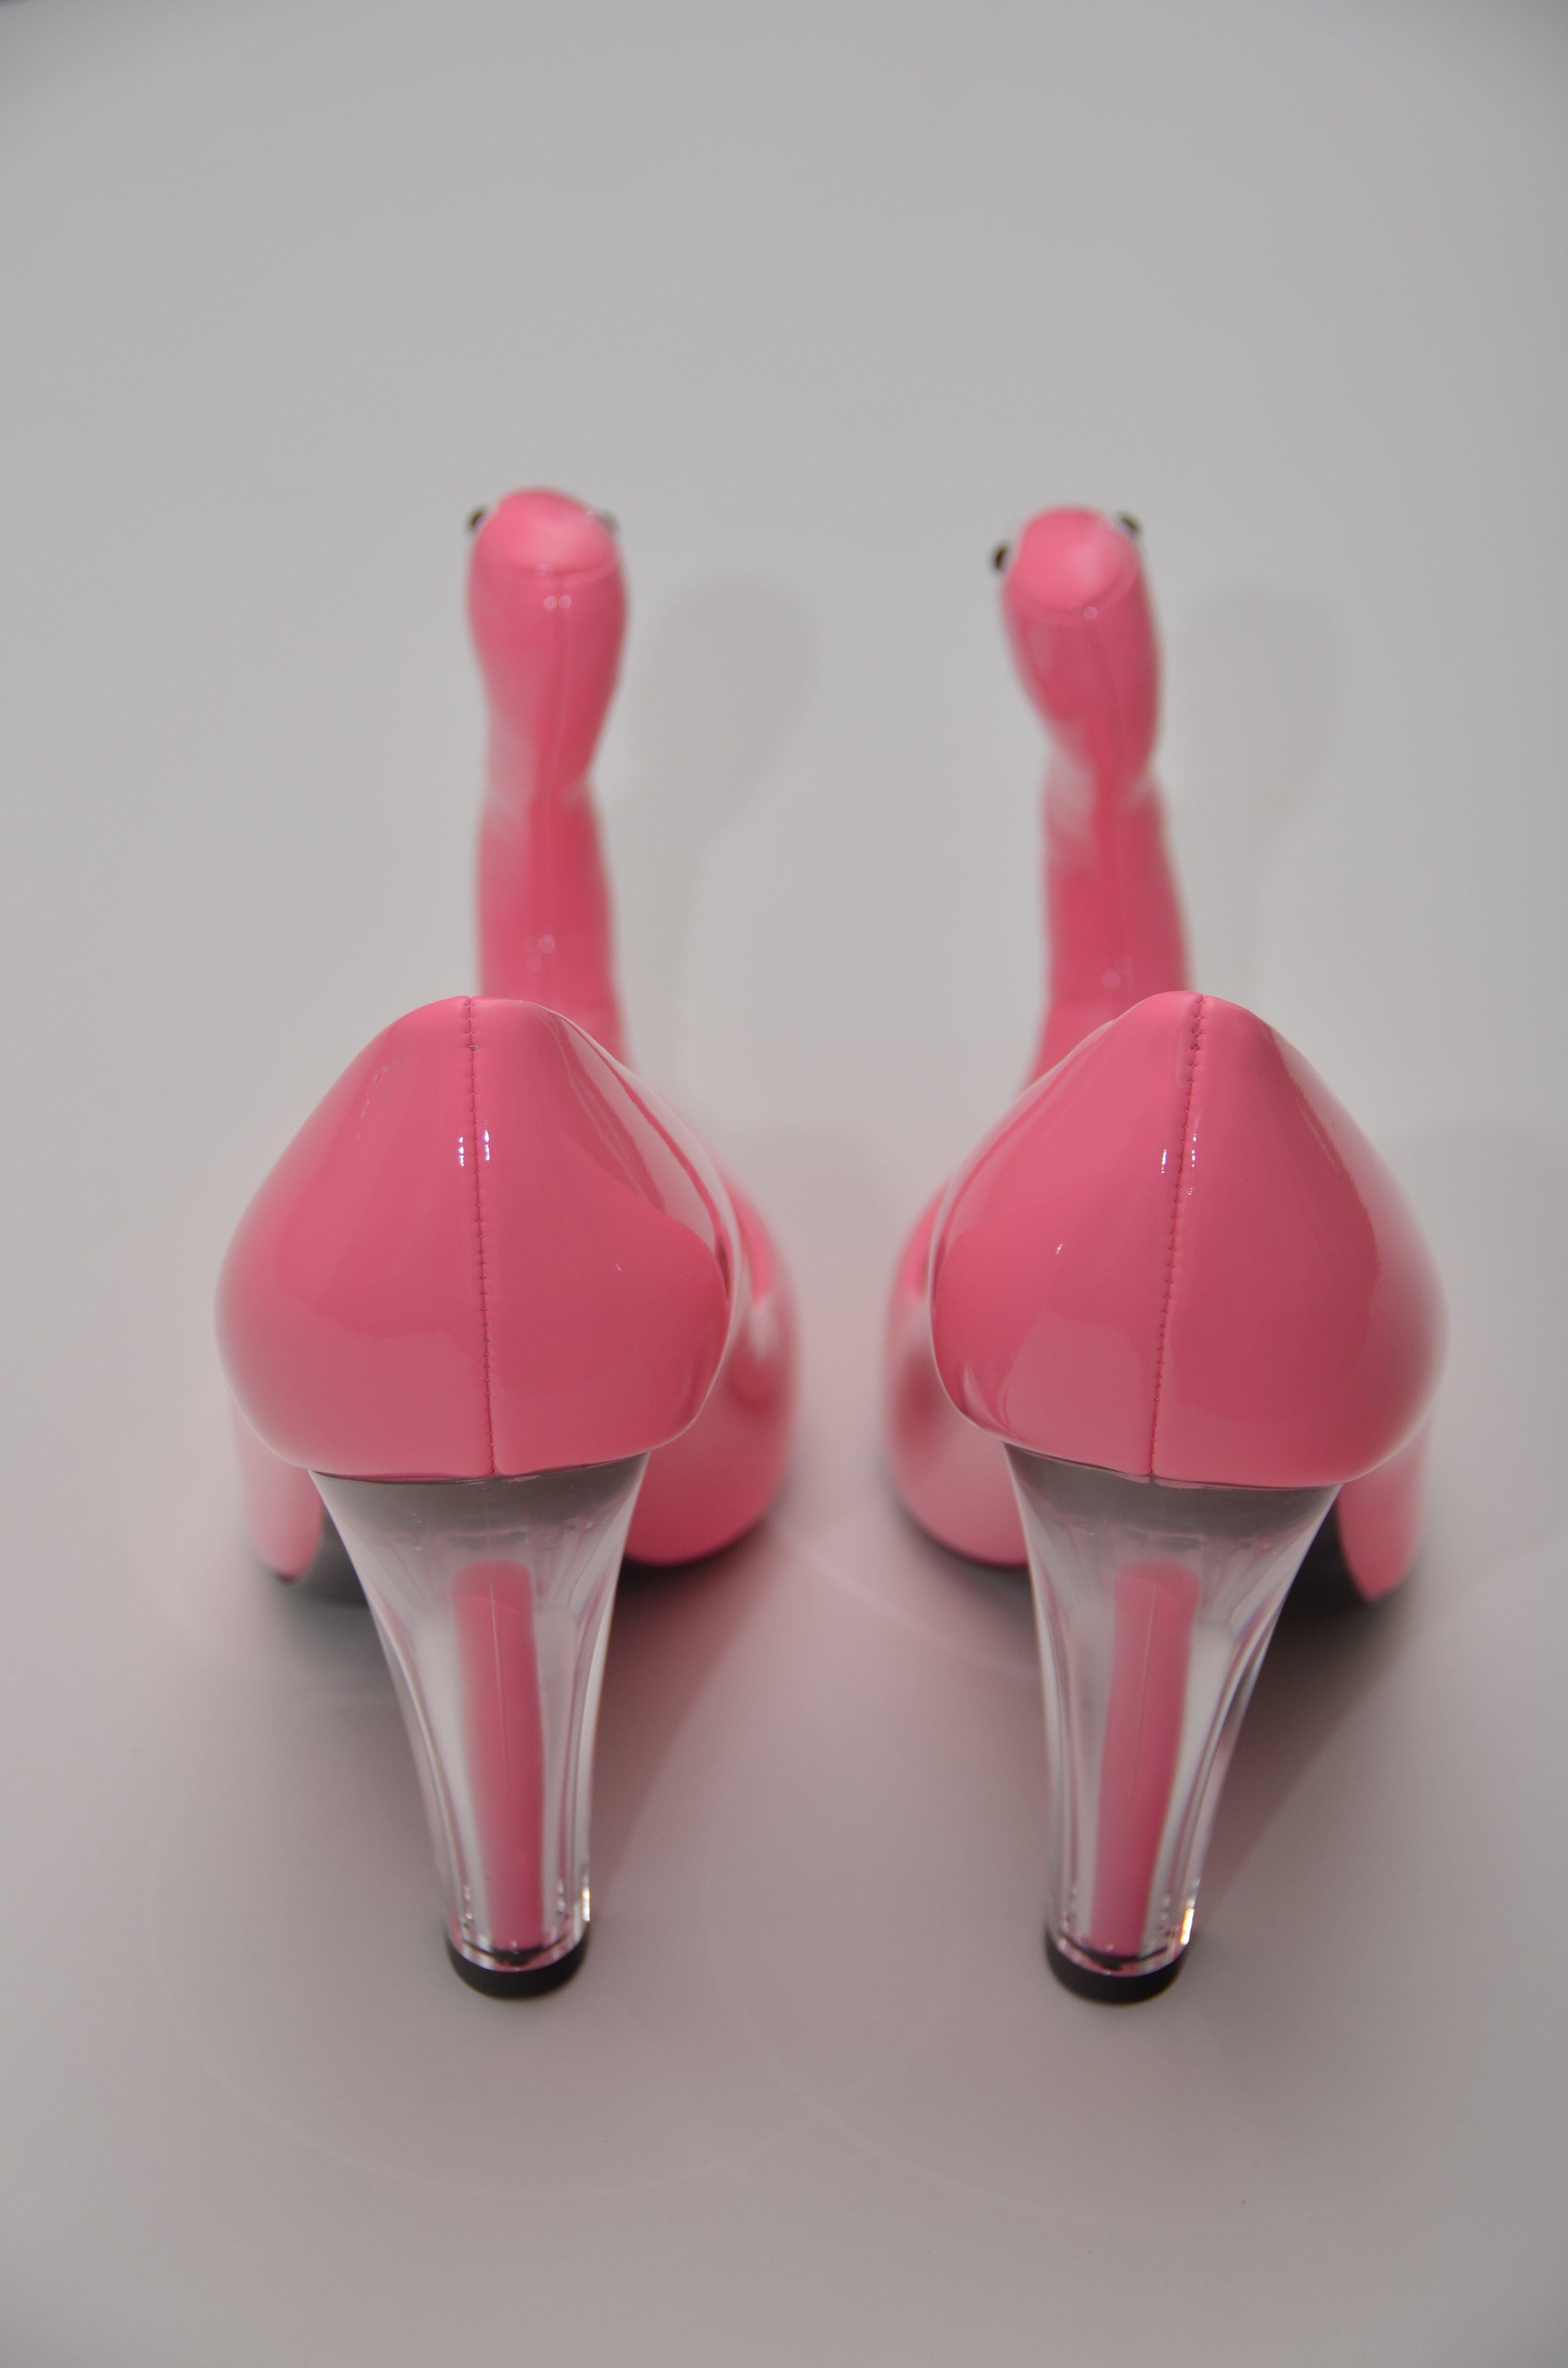 Moschino  Laufsteg Jeremy Scott  Inflatable Flamingo-Schuhe in Rosa  Größe 40   NEU  Damen im Angebot